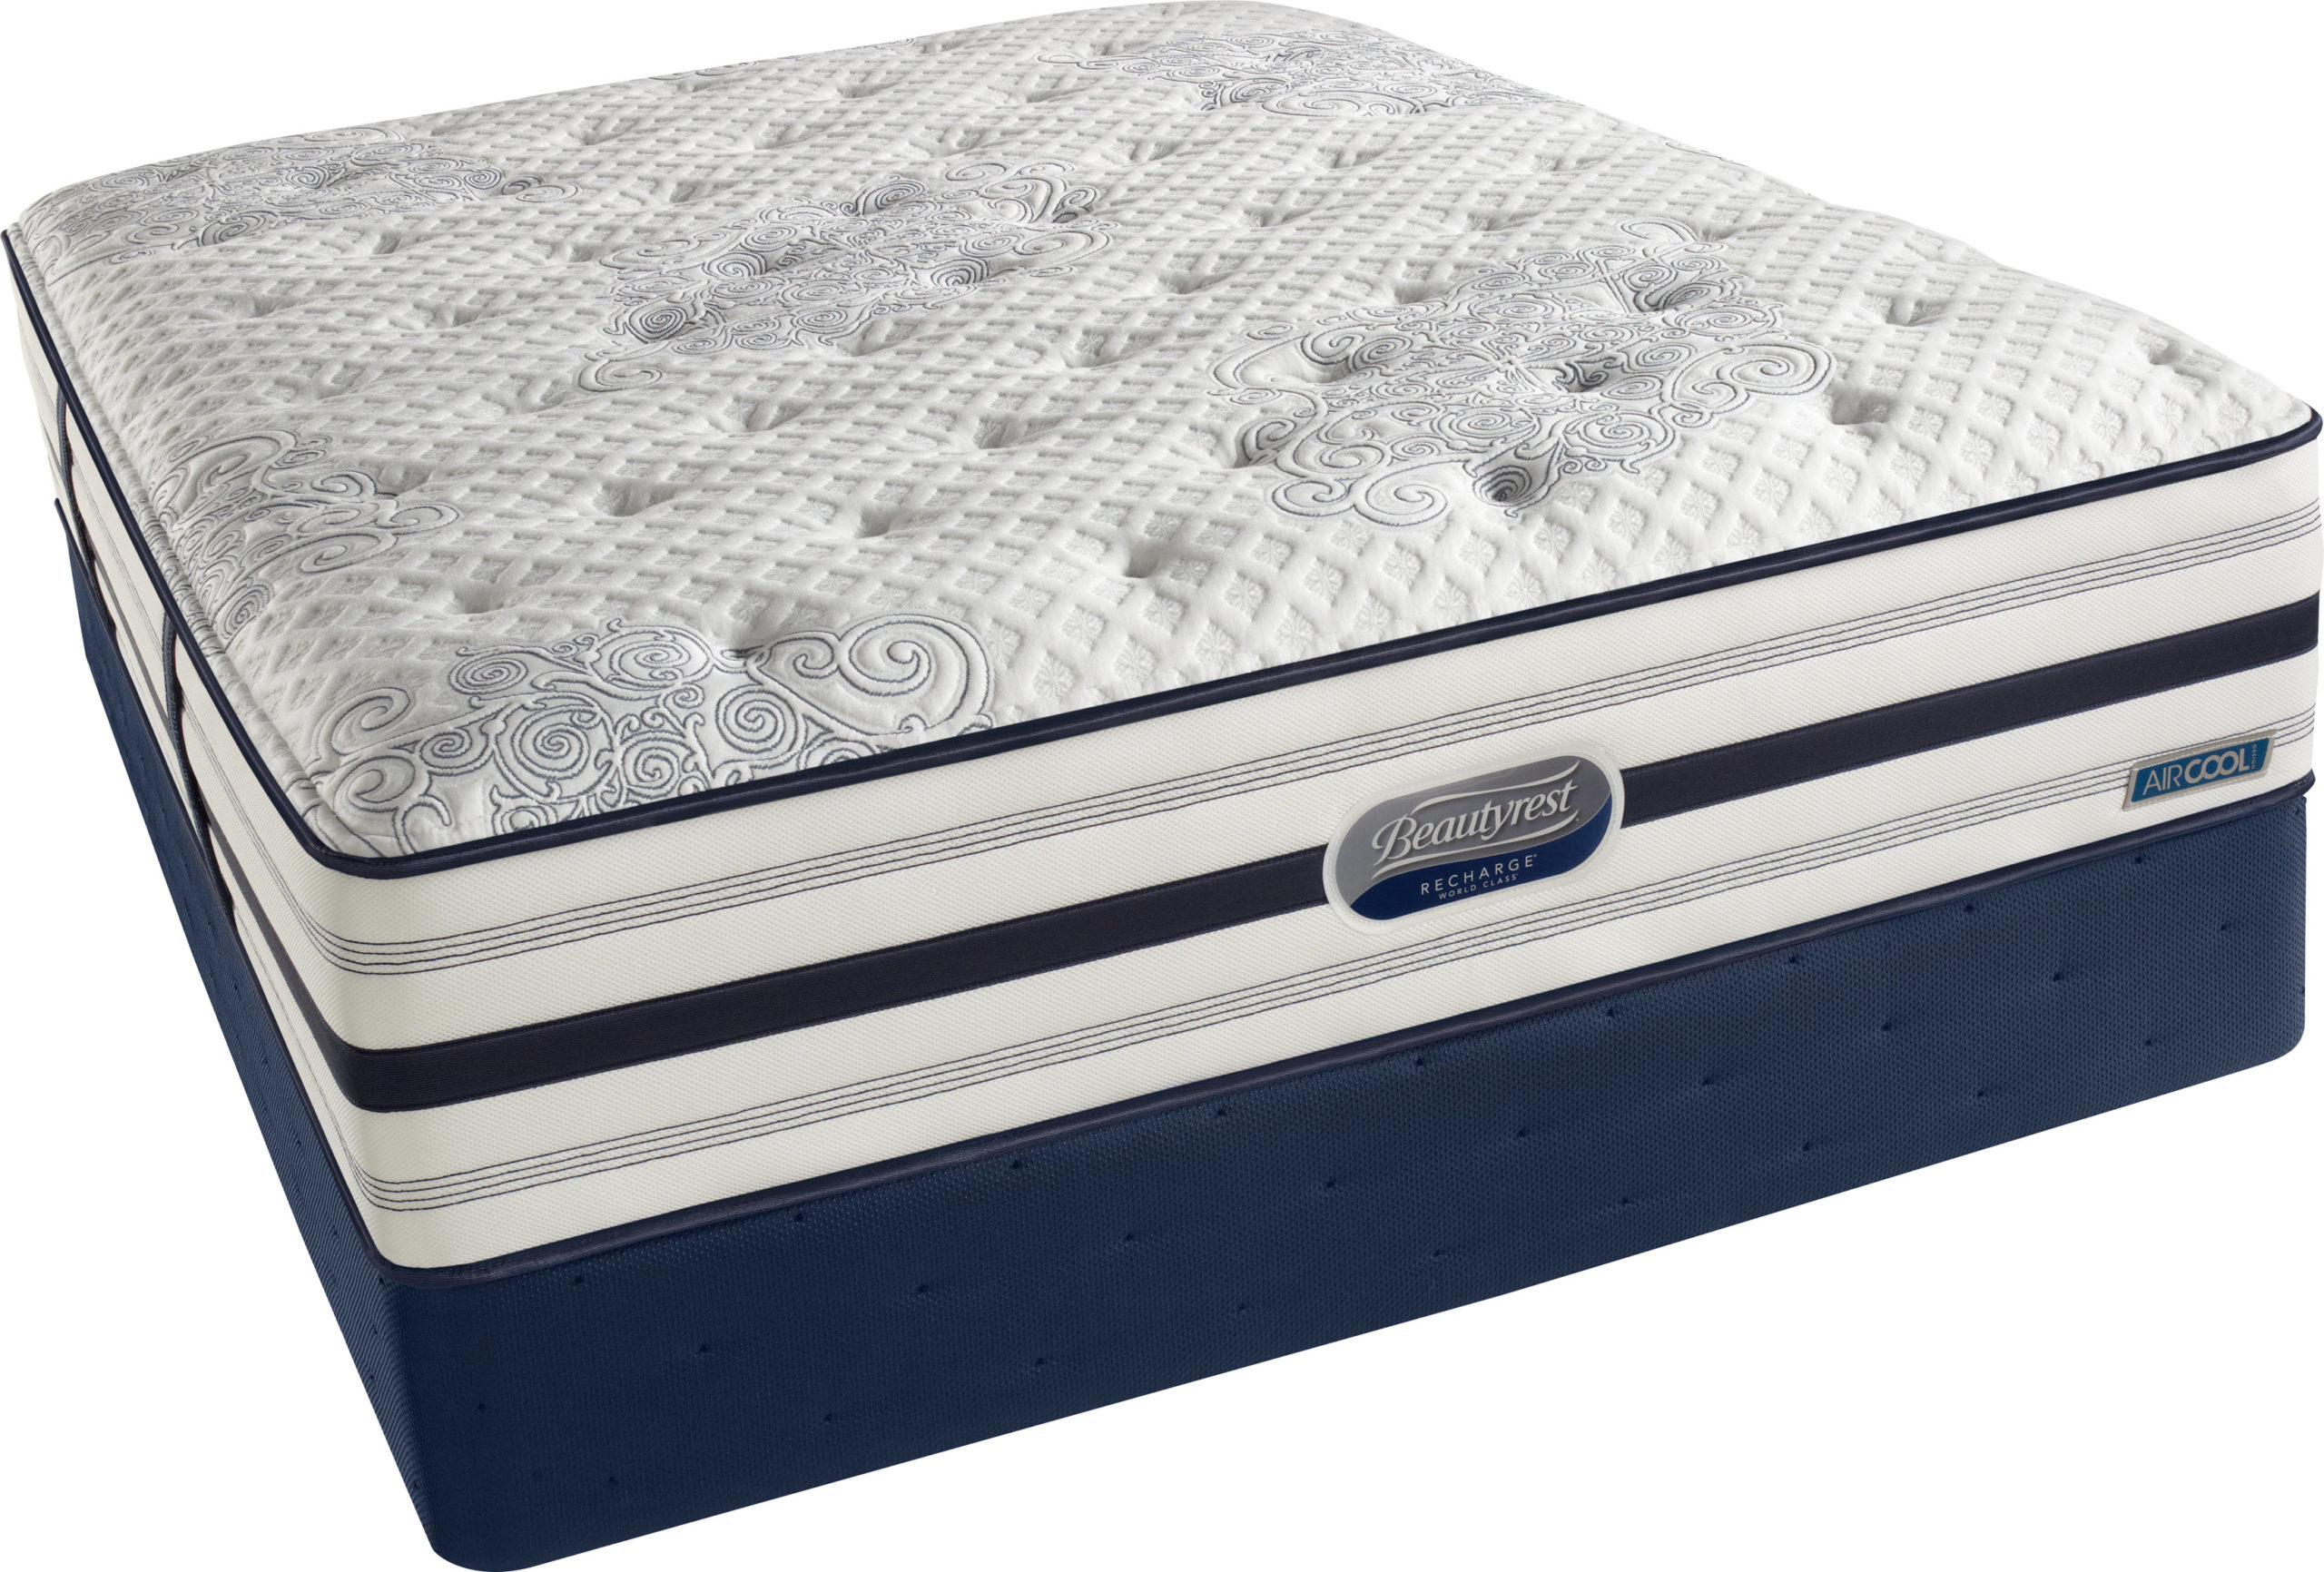 beautyrest world class king pillow top mattress